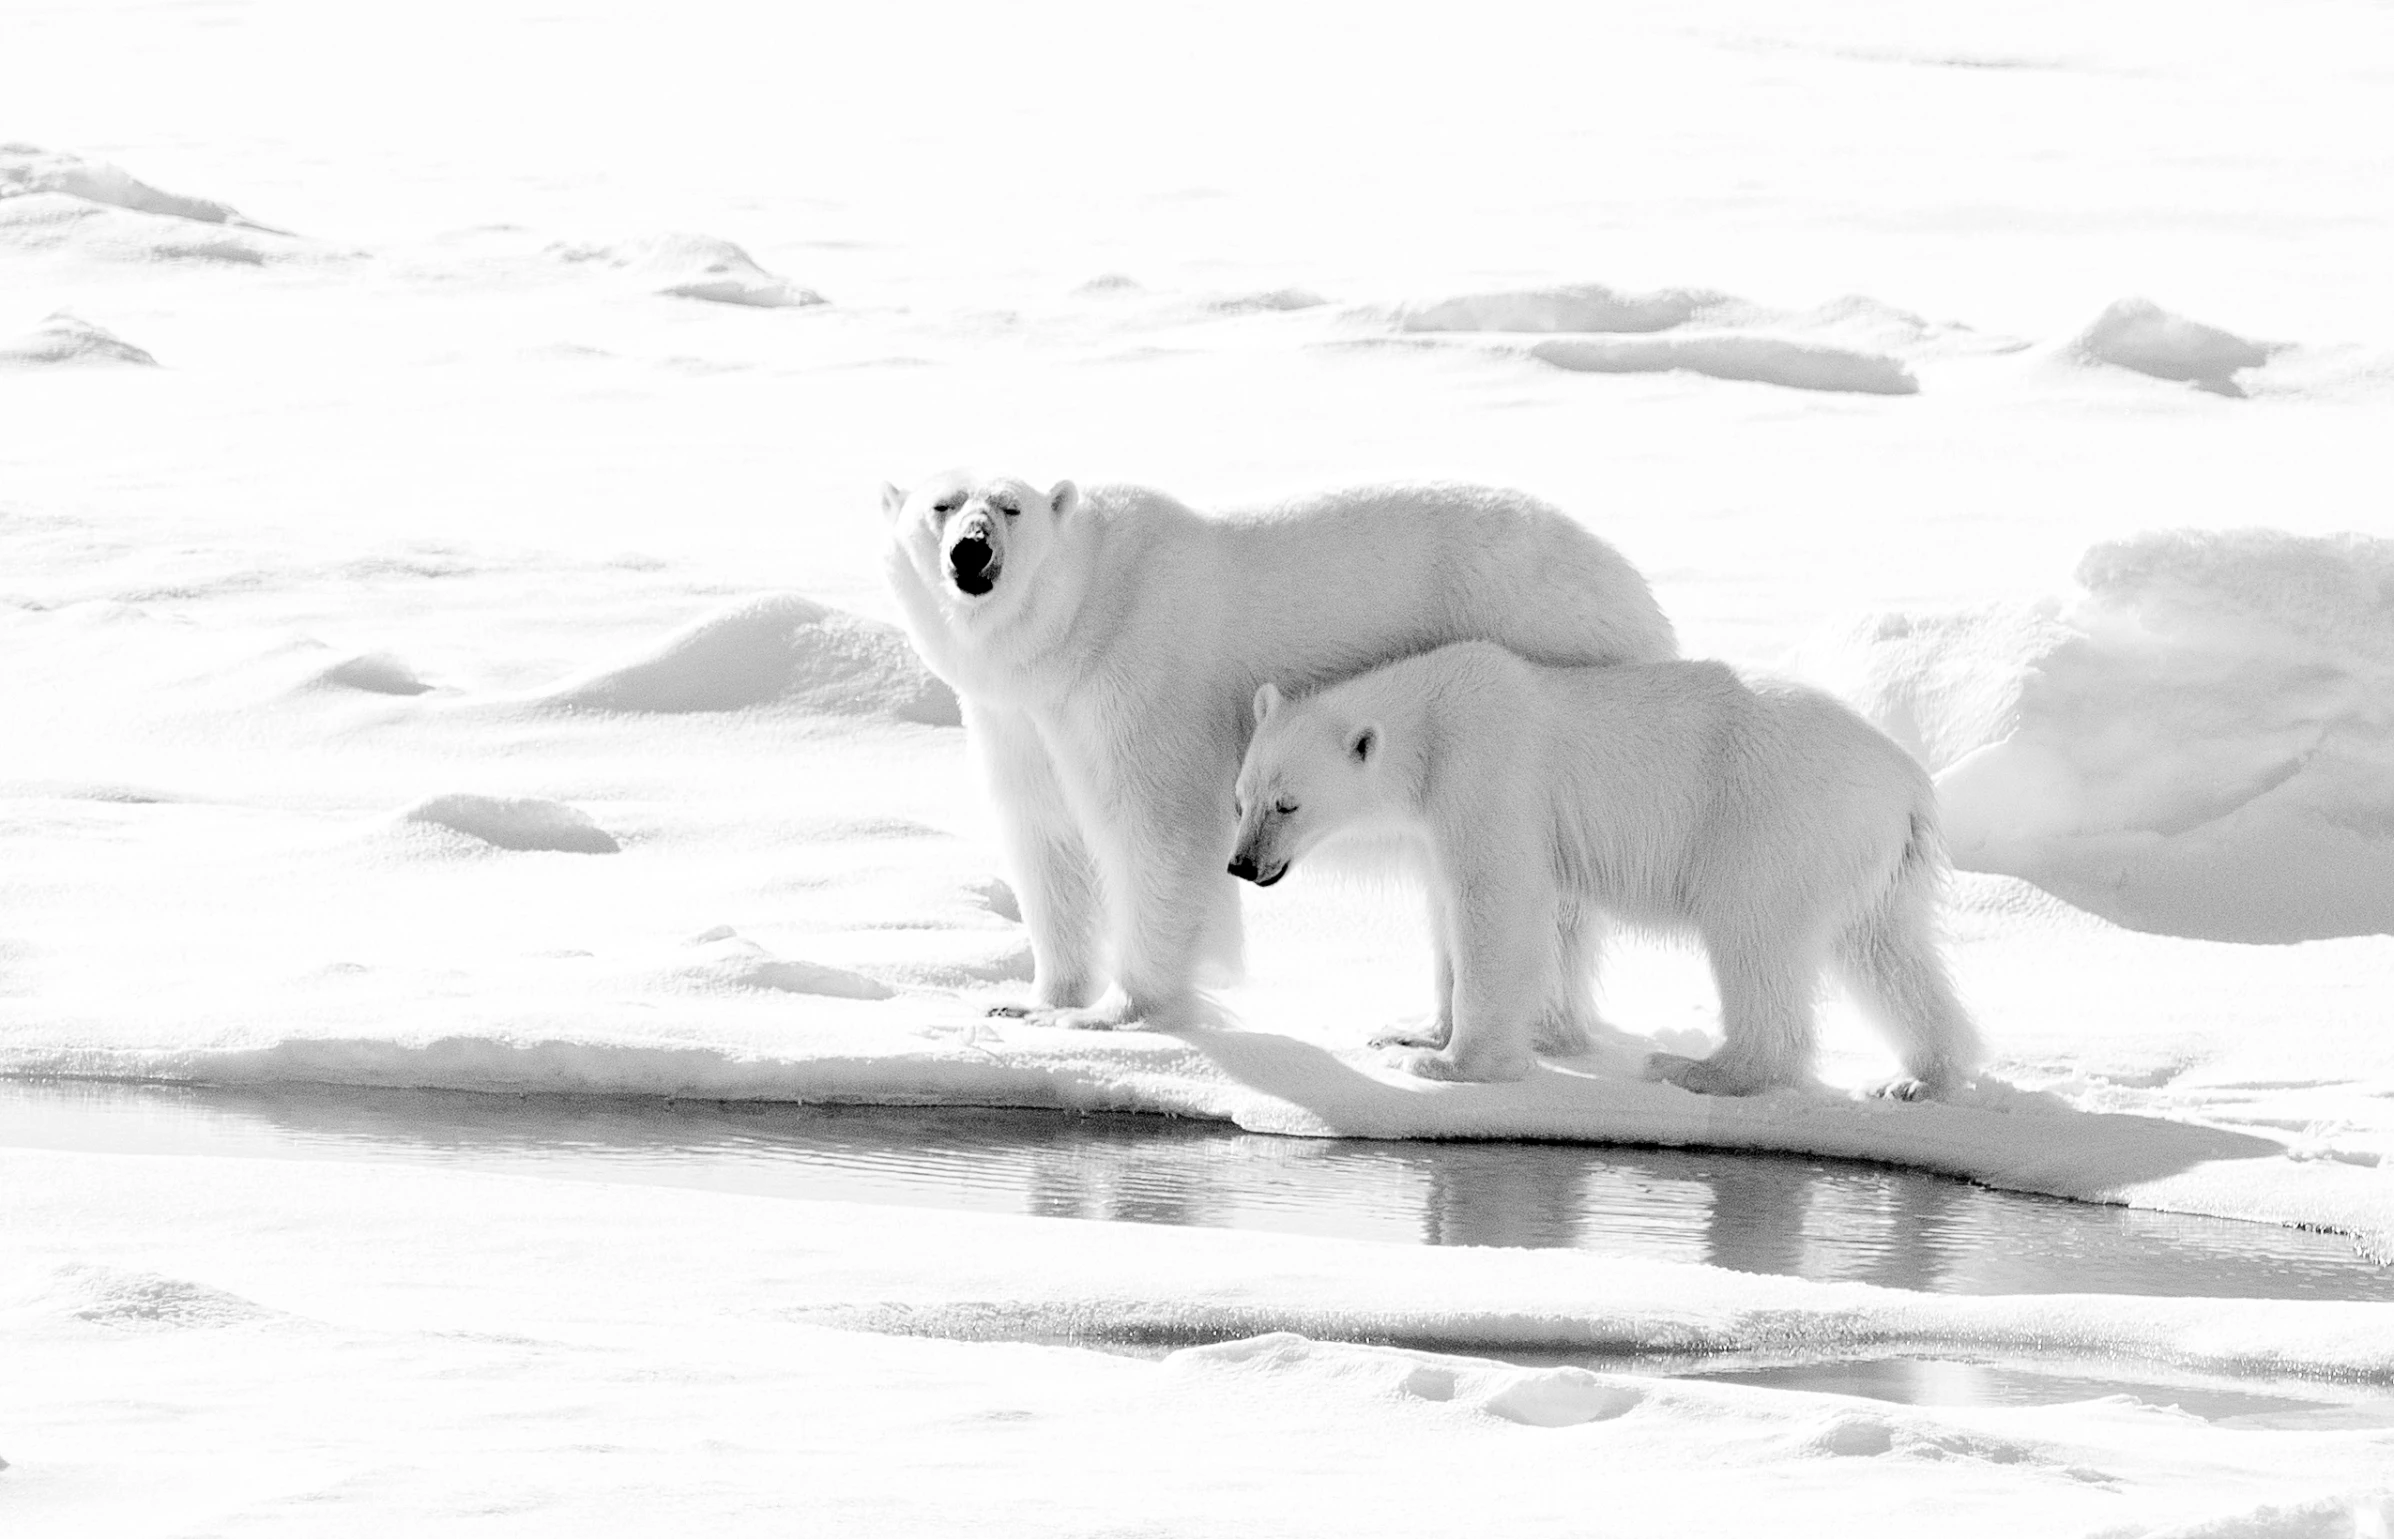 a large polar bear and small baby polar bear on ice